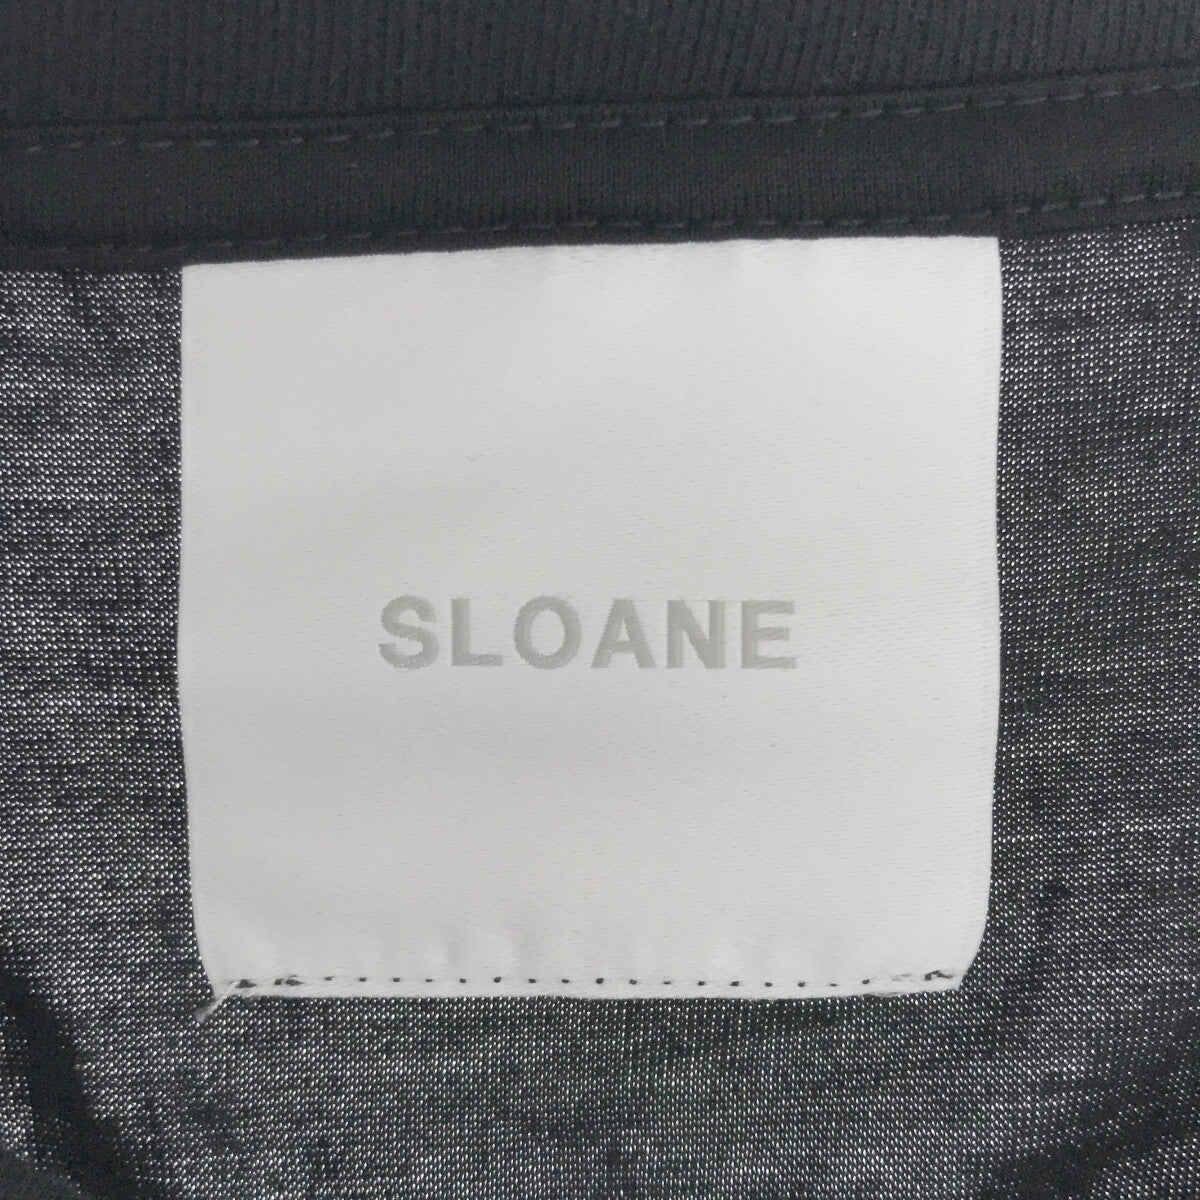 SLOANE / スローン | 60/2 コットン天竺UV 長袖Tシャツ | 5 | ブラック | メンズ